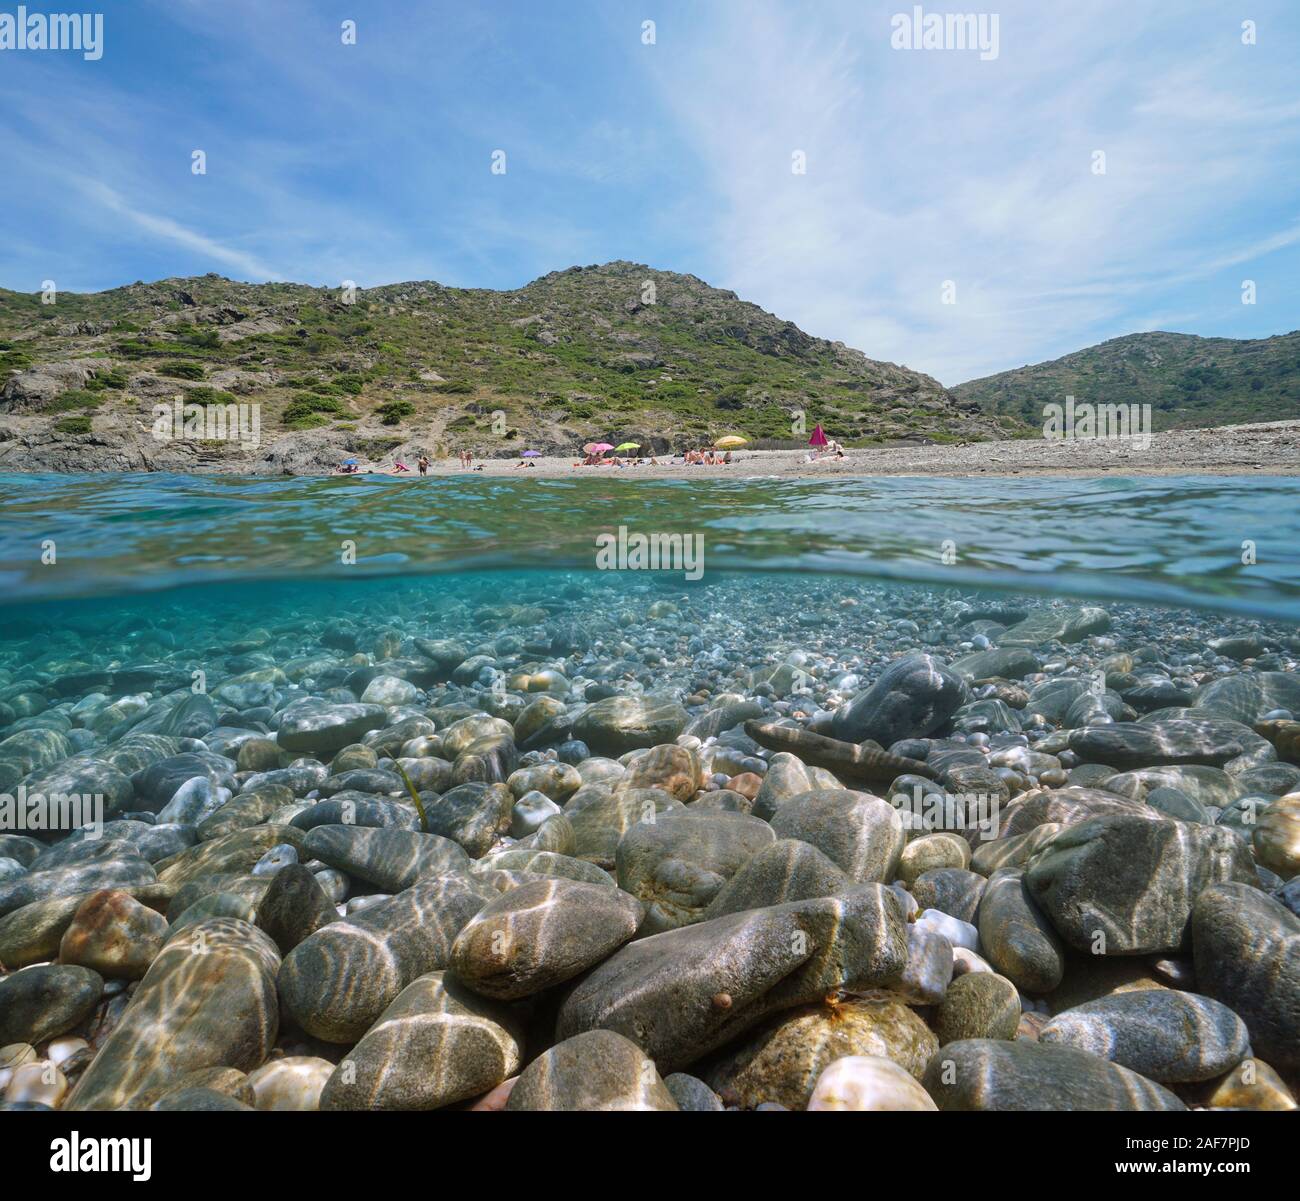 Spagna mare mediterraneo, spiaggia shore in estate con i ciottoli rocce sottomarine, vista suddivisa al di sopra e al di sotto della superficie, Costa Brava, El Port de la Selva Foto Stock